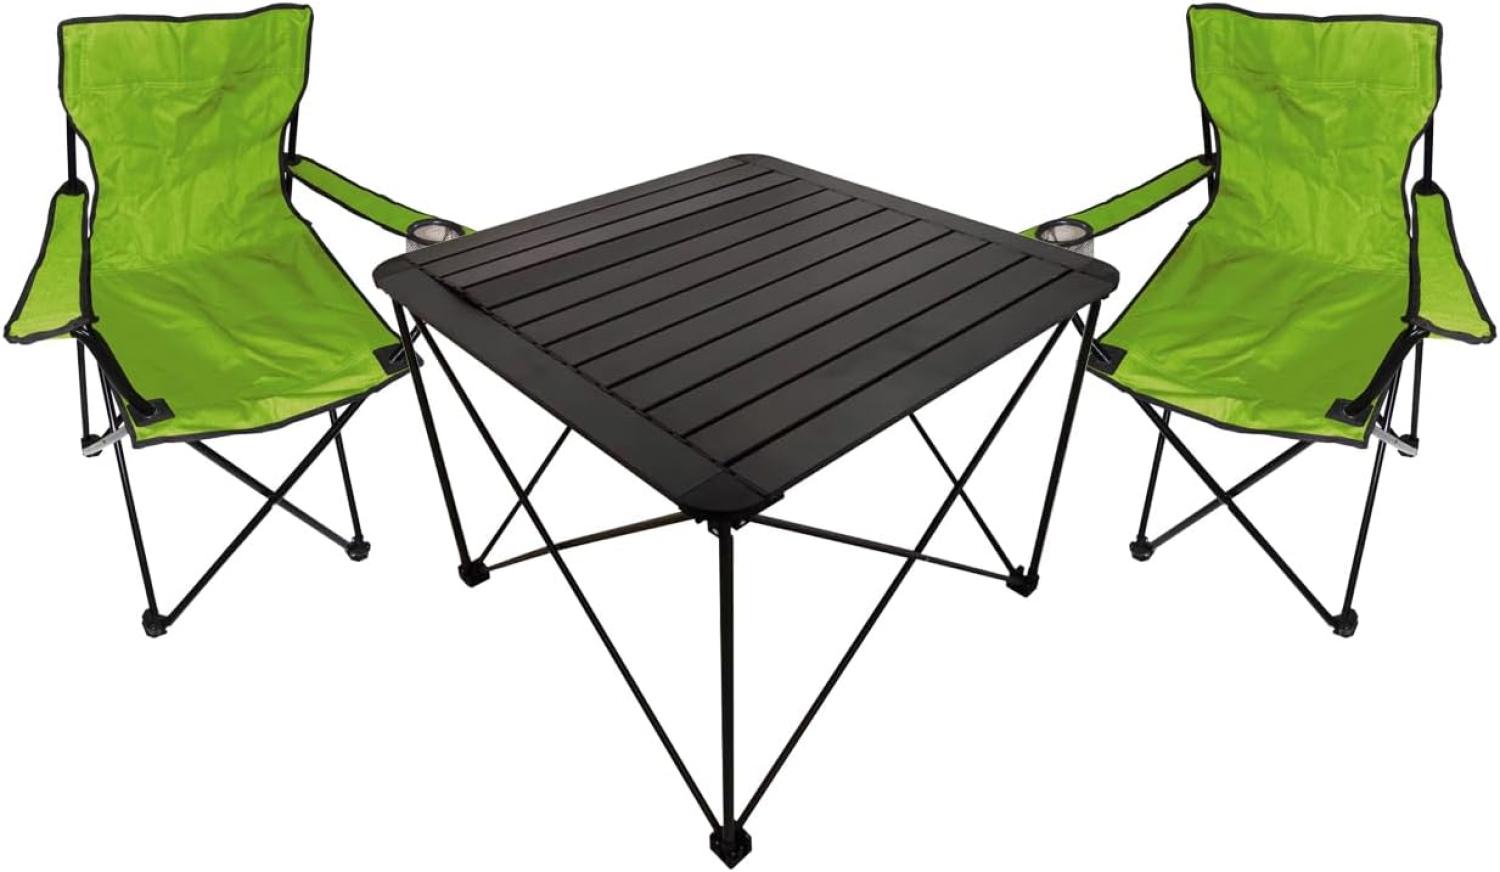 3teiliges Campingmöbel Set Campingtisch Campingstuhl L70xB70xH56cm Bild 1